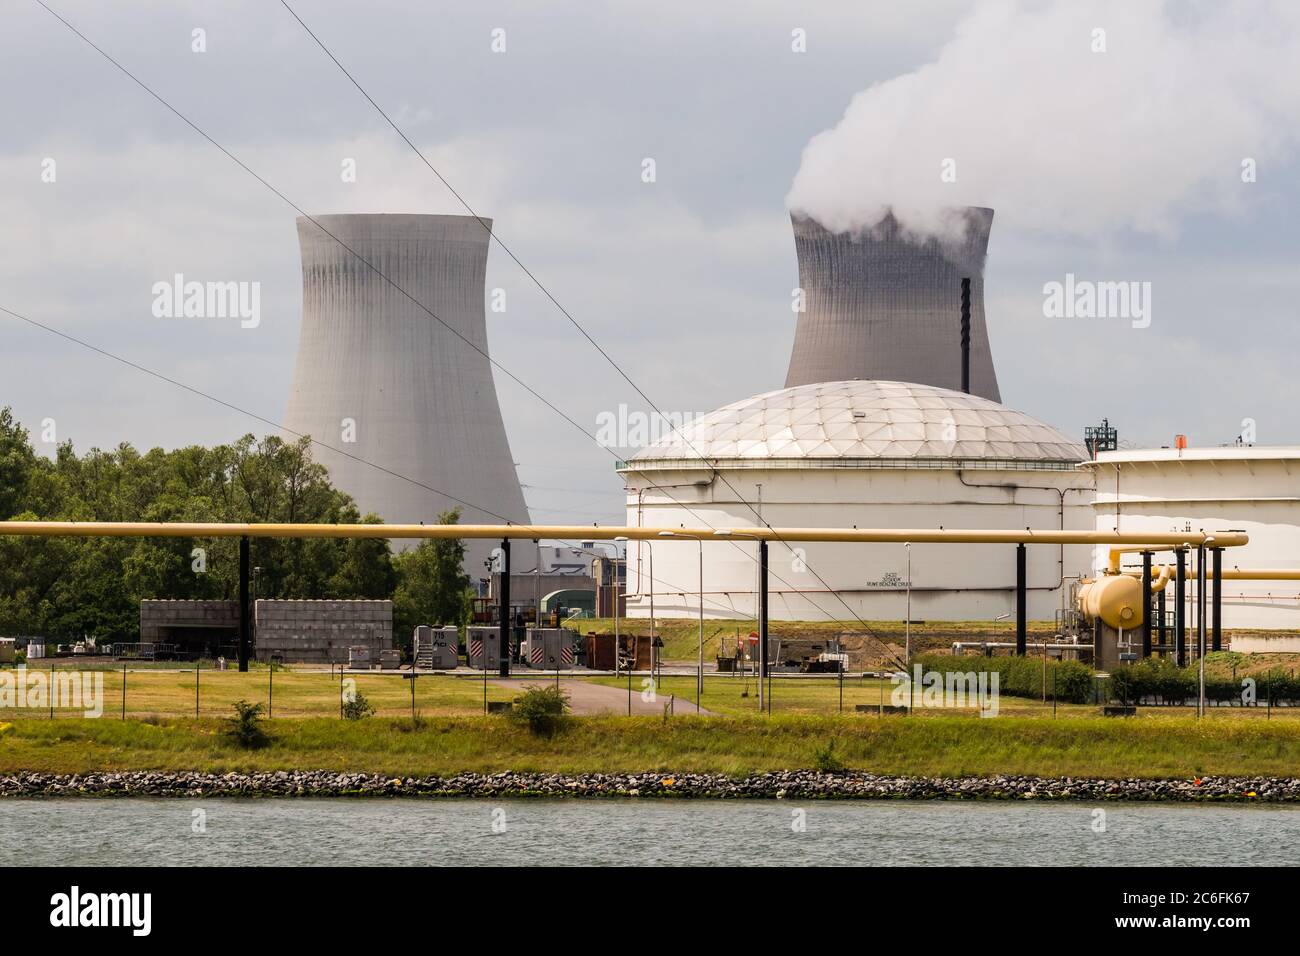 Anversa, Belgio - 8 giugno 2019: Vista di alcuni impianti petrolchimici nel porto di Anversa alla centrale nucleare Doel Foto Stock